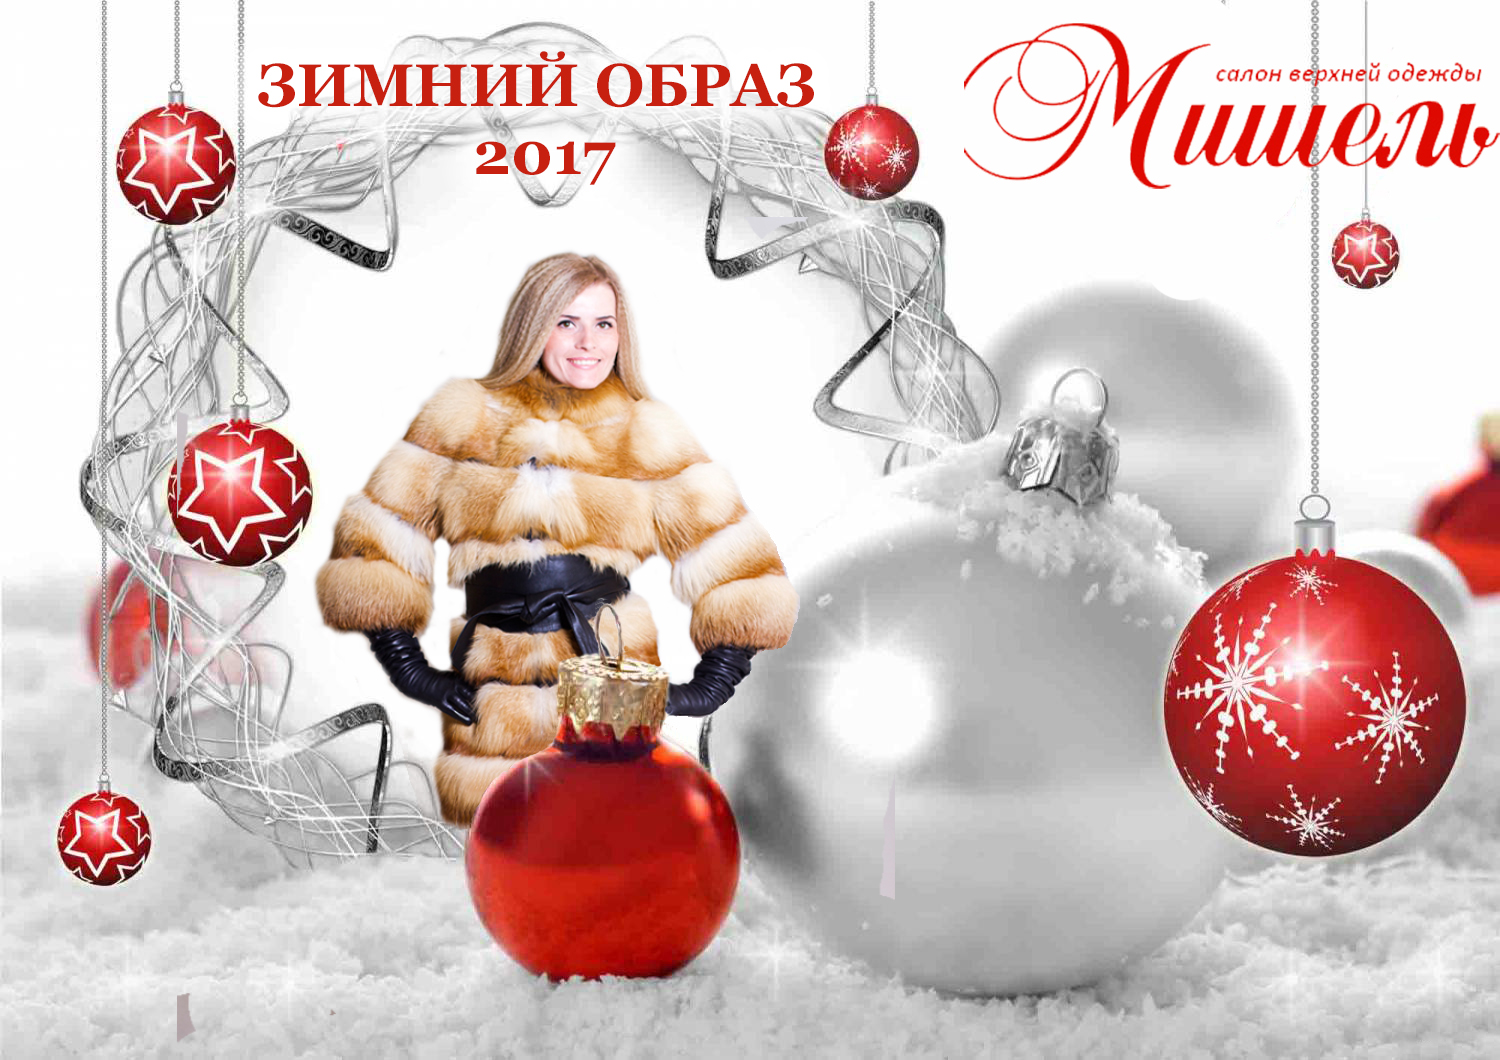 Новогодний образ - Шубы Вологда 2017